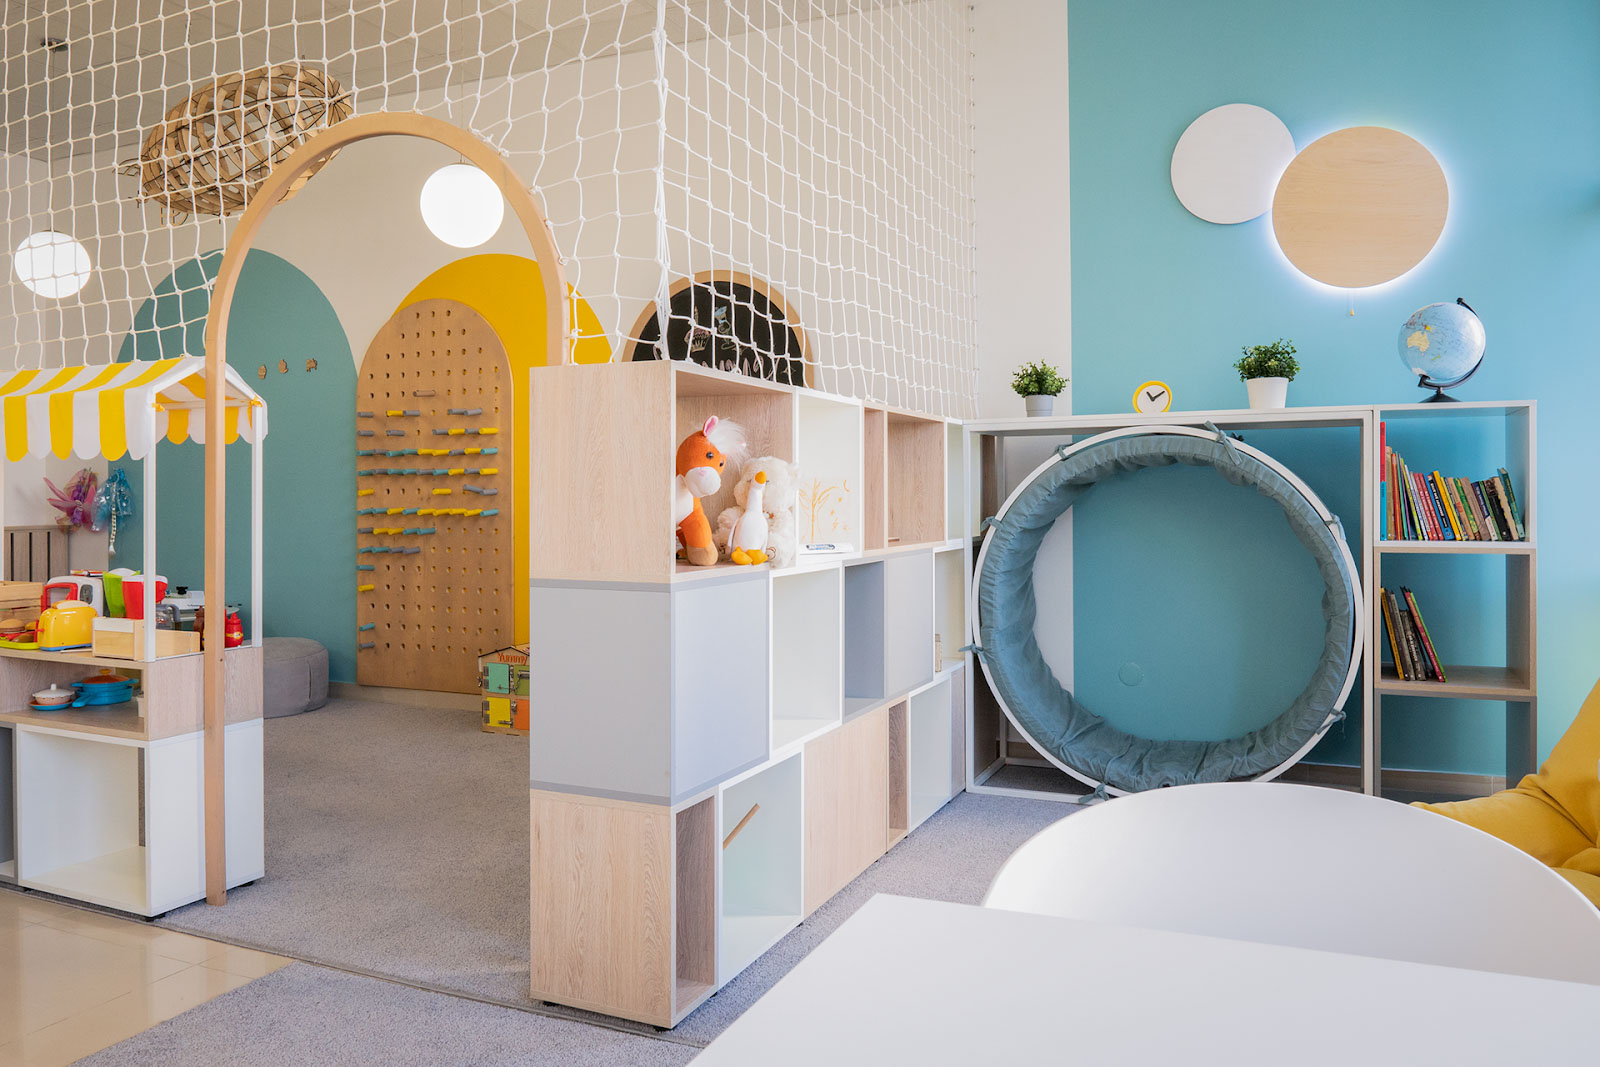 hiết kế không gian cafe kids 